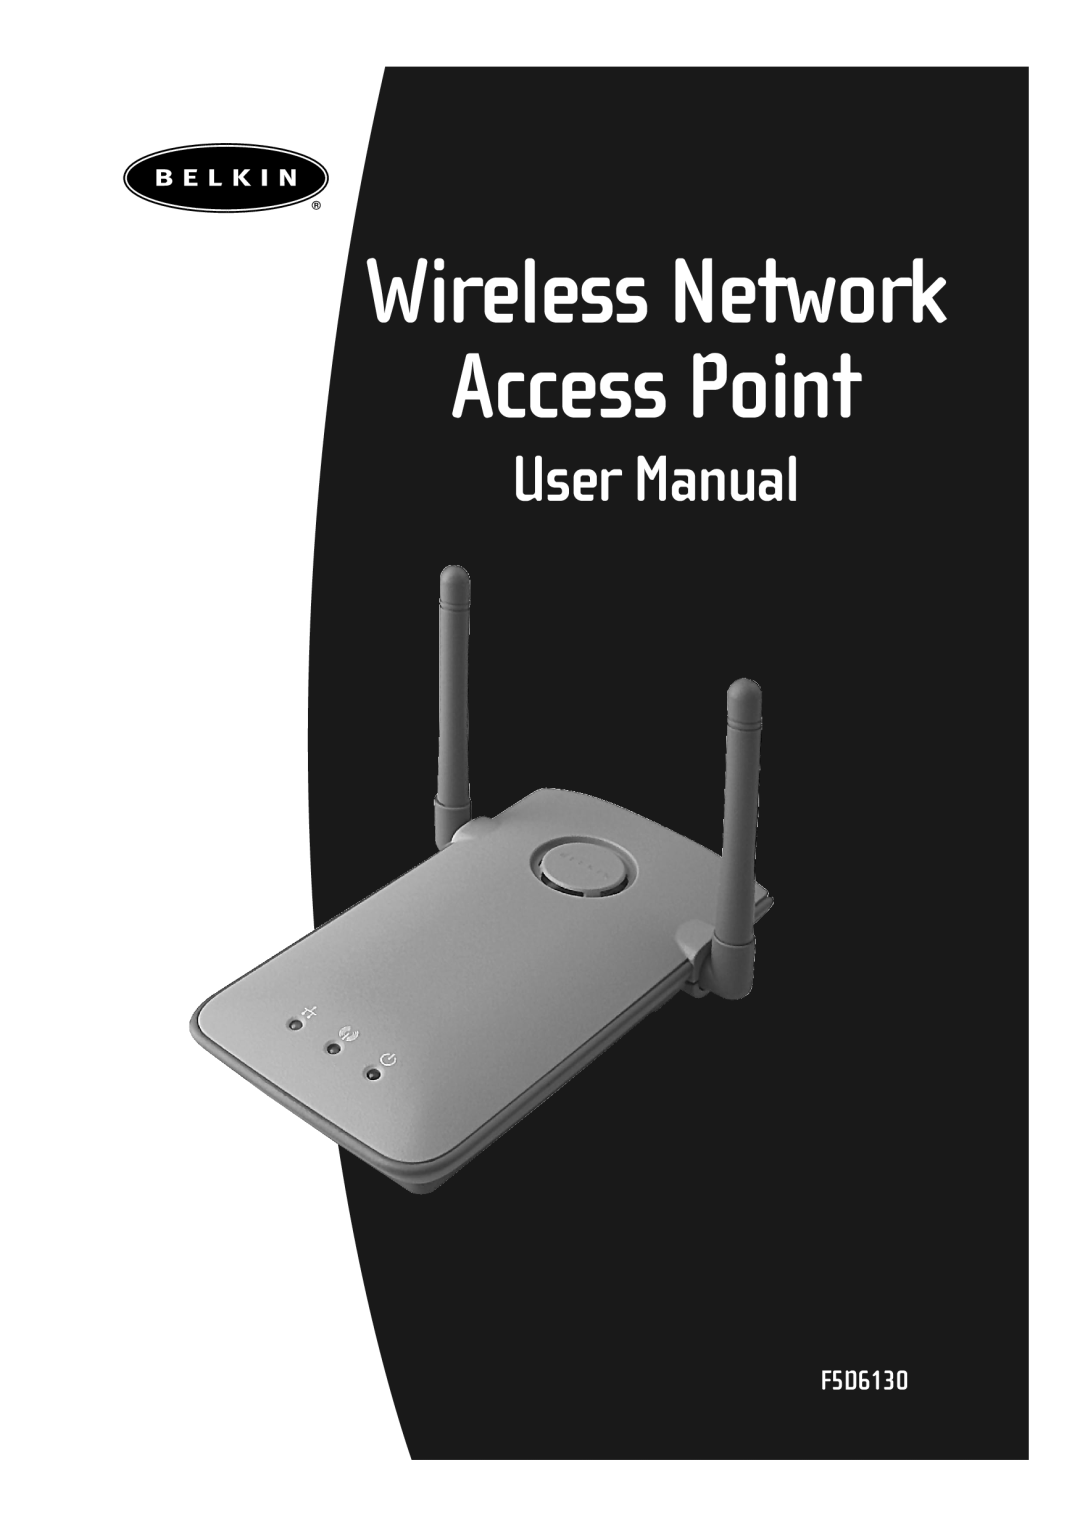 Belkin F5D6130 user manual Access Point, Wireless Network 